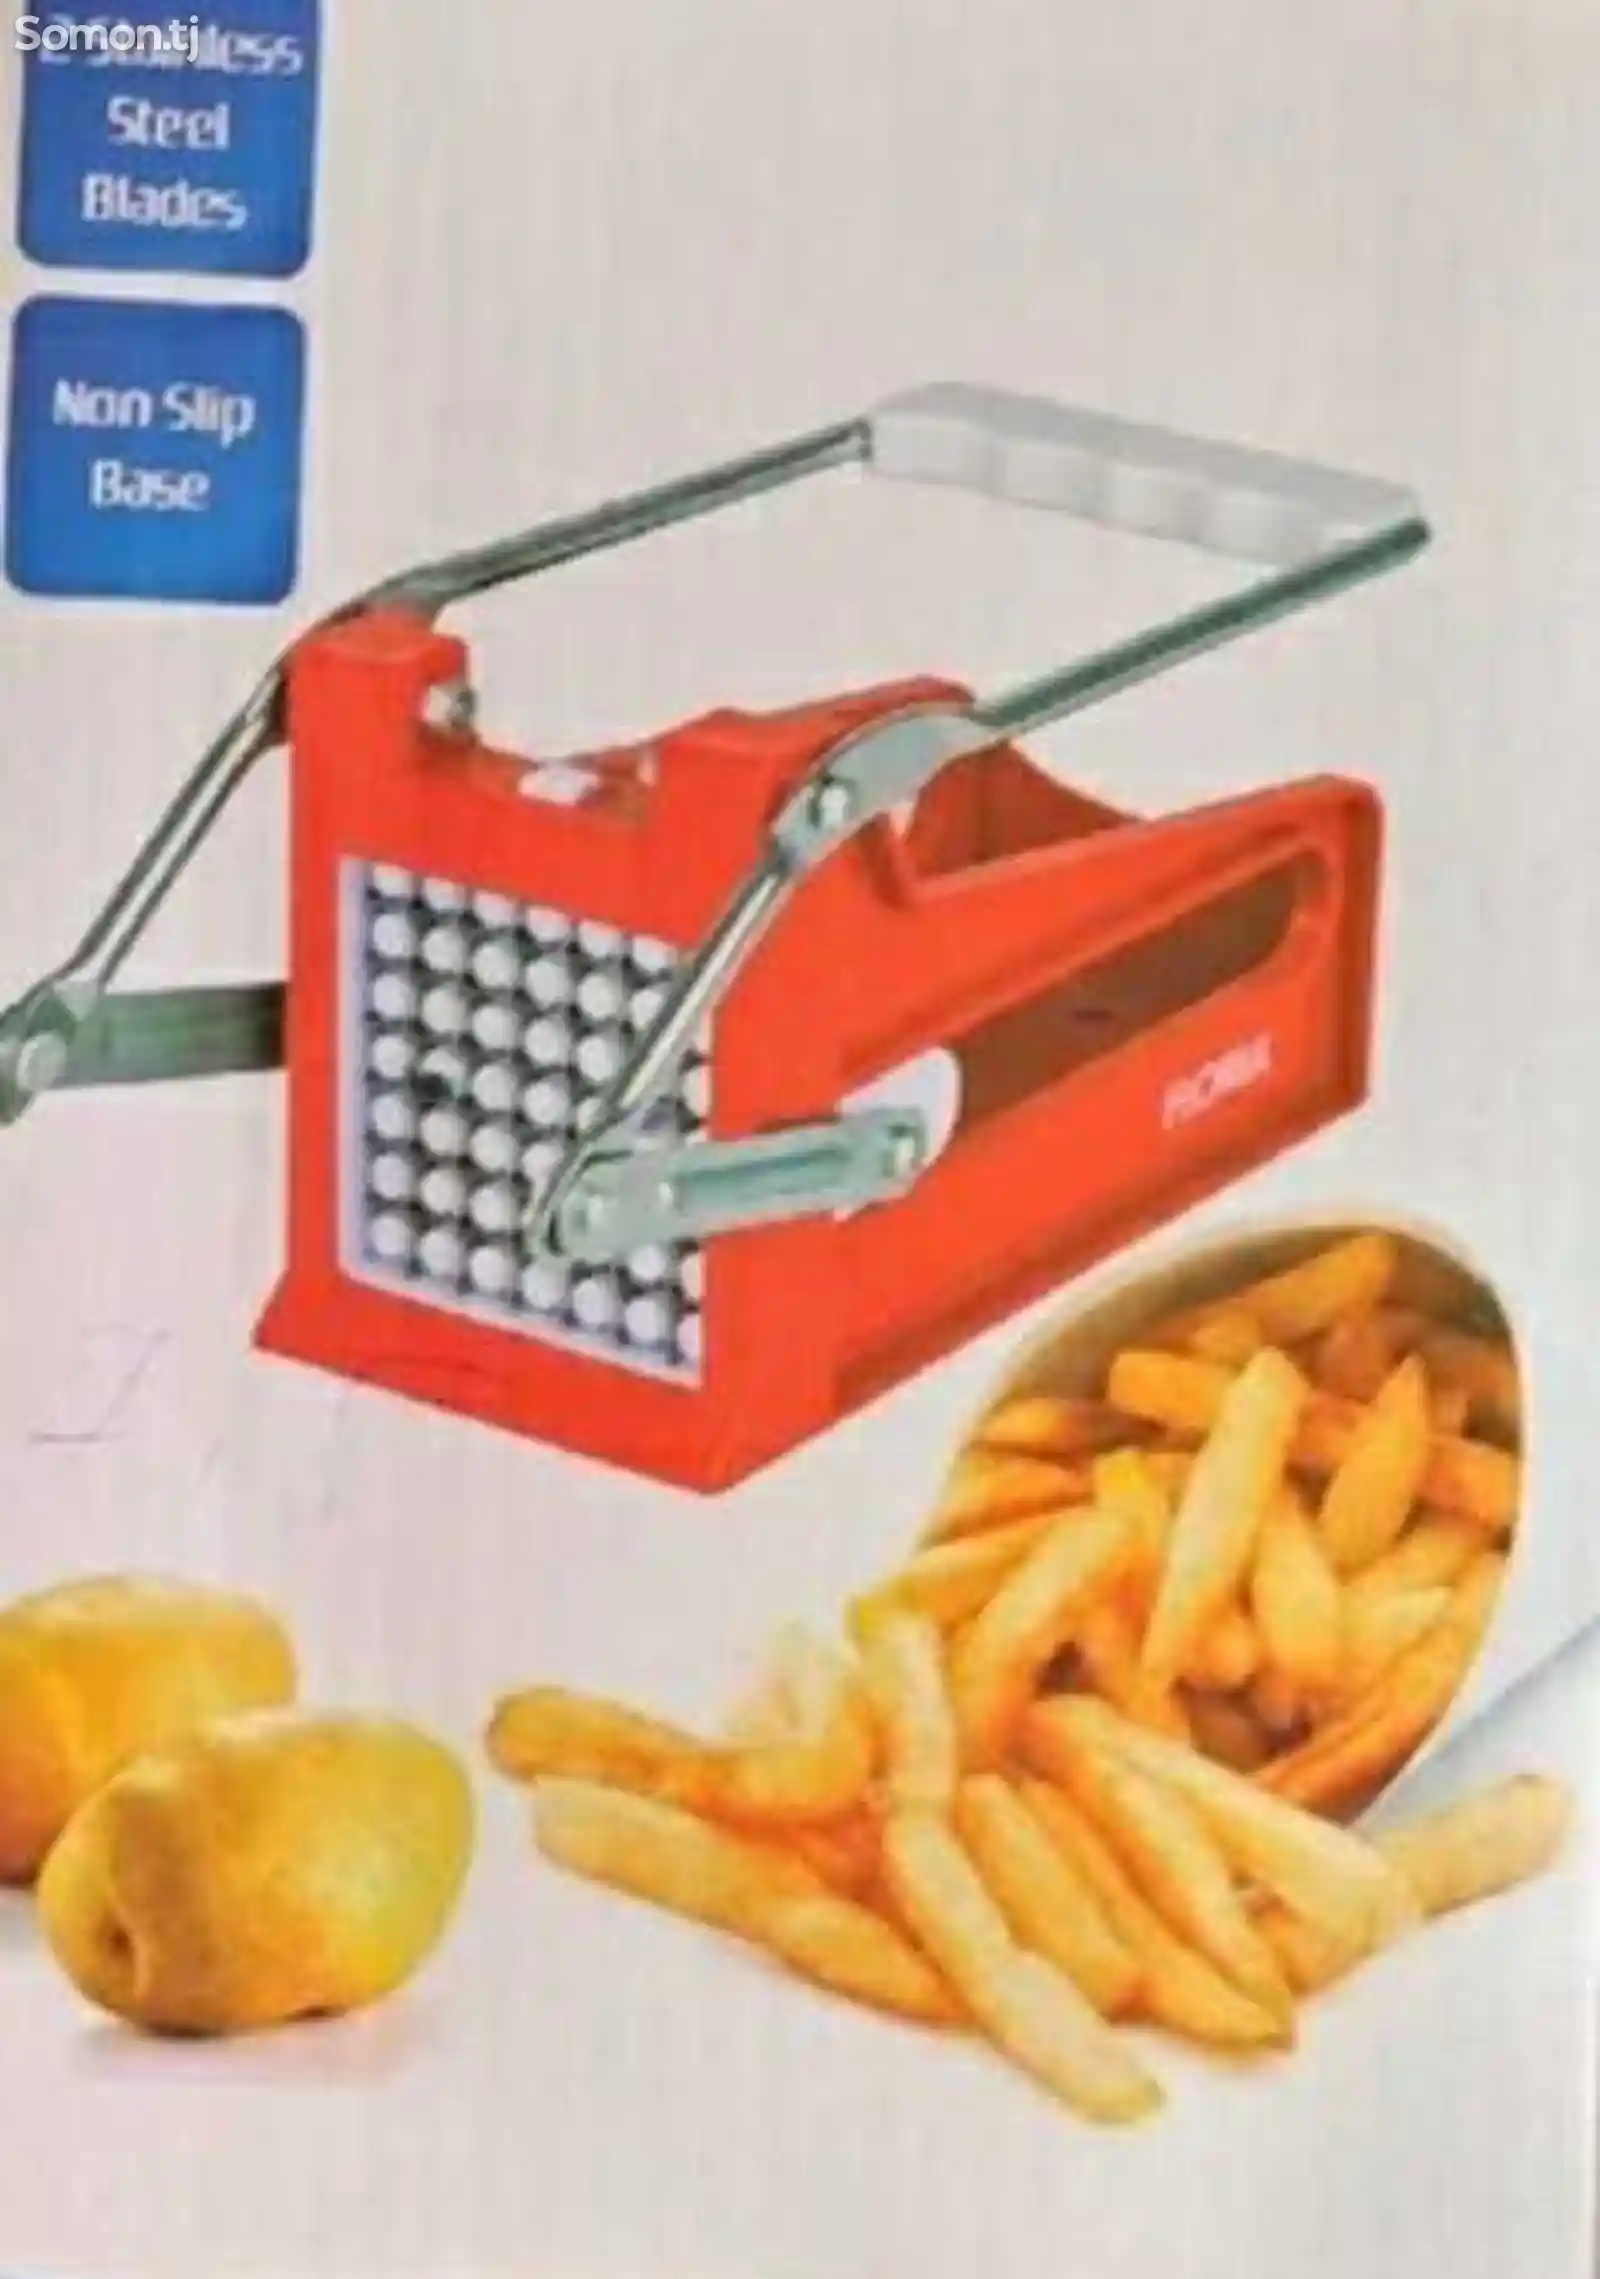 Аппарат для резки картофеля Floria 634